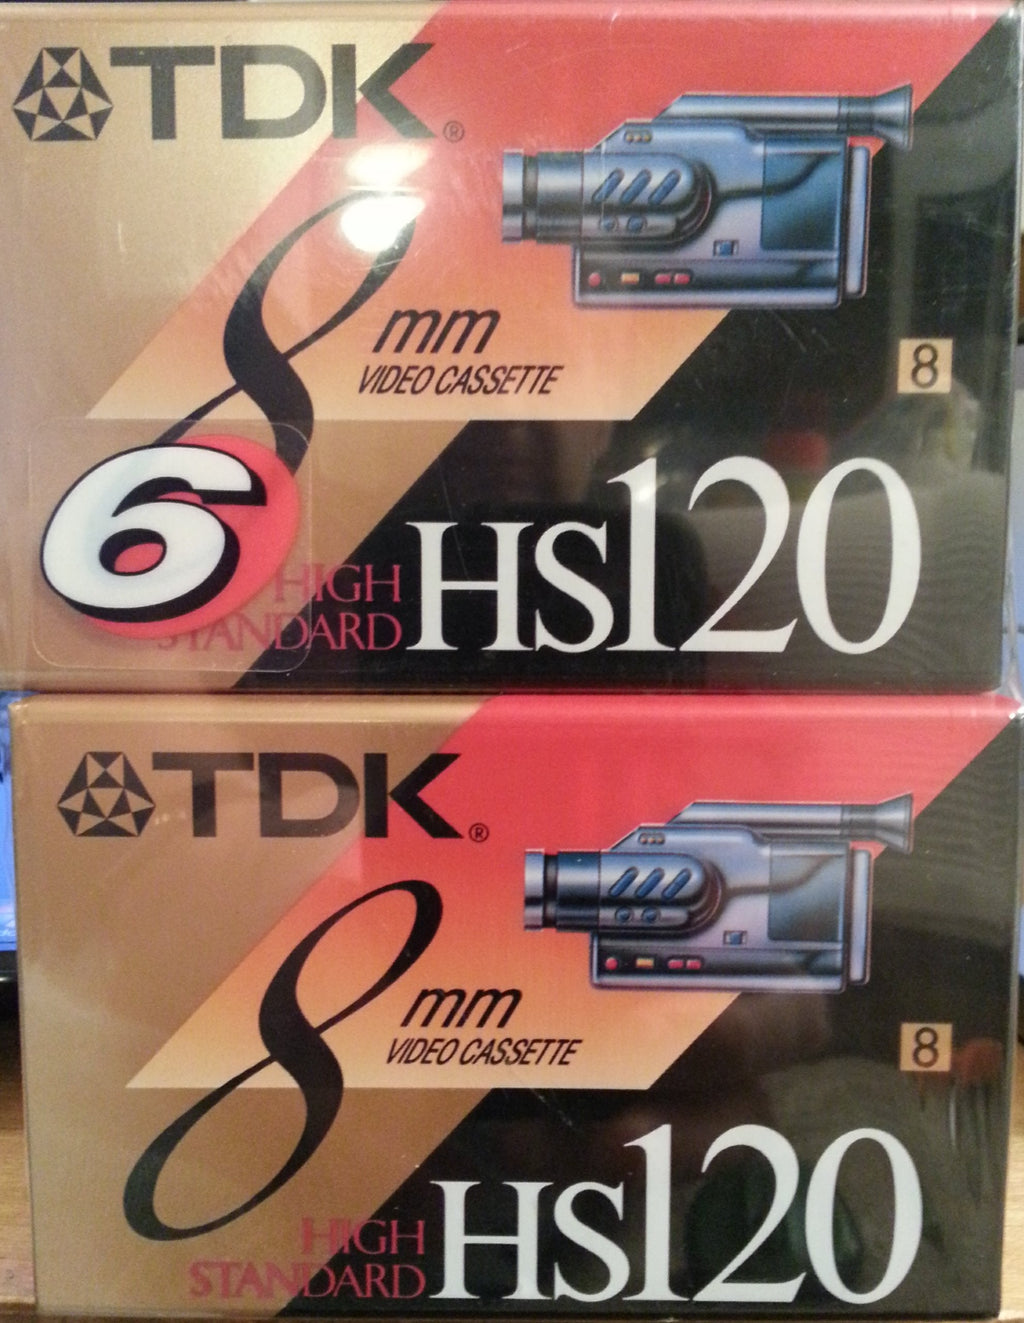  [AUSTRALIA] - TDK 8mm Video Cassette HS 120 6 pack